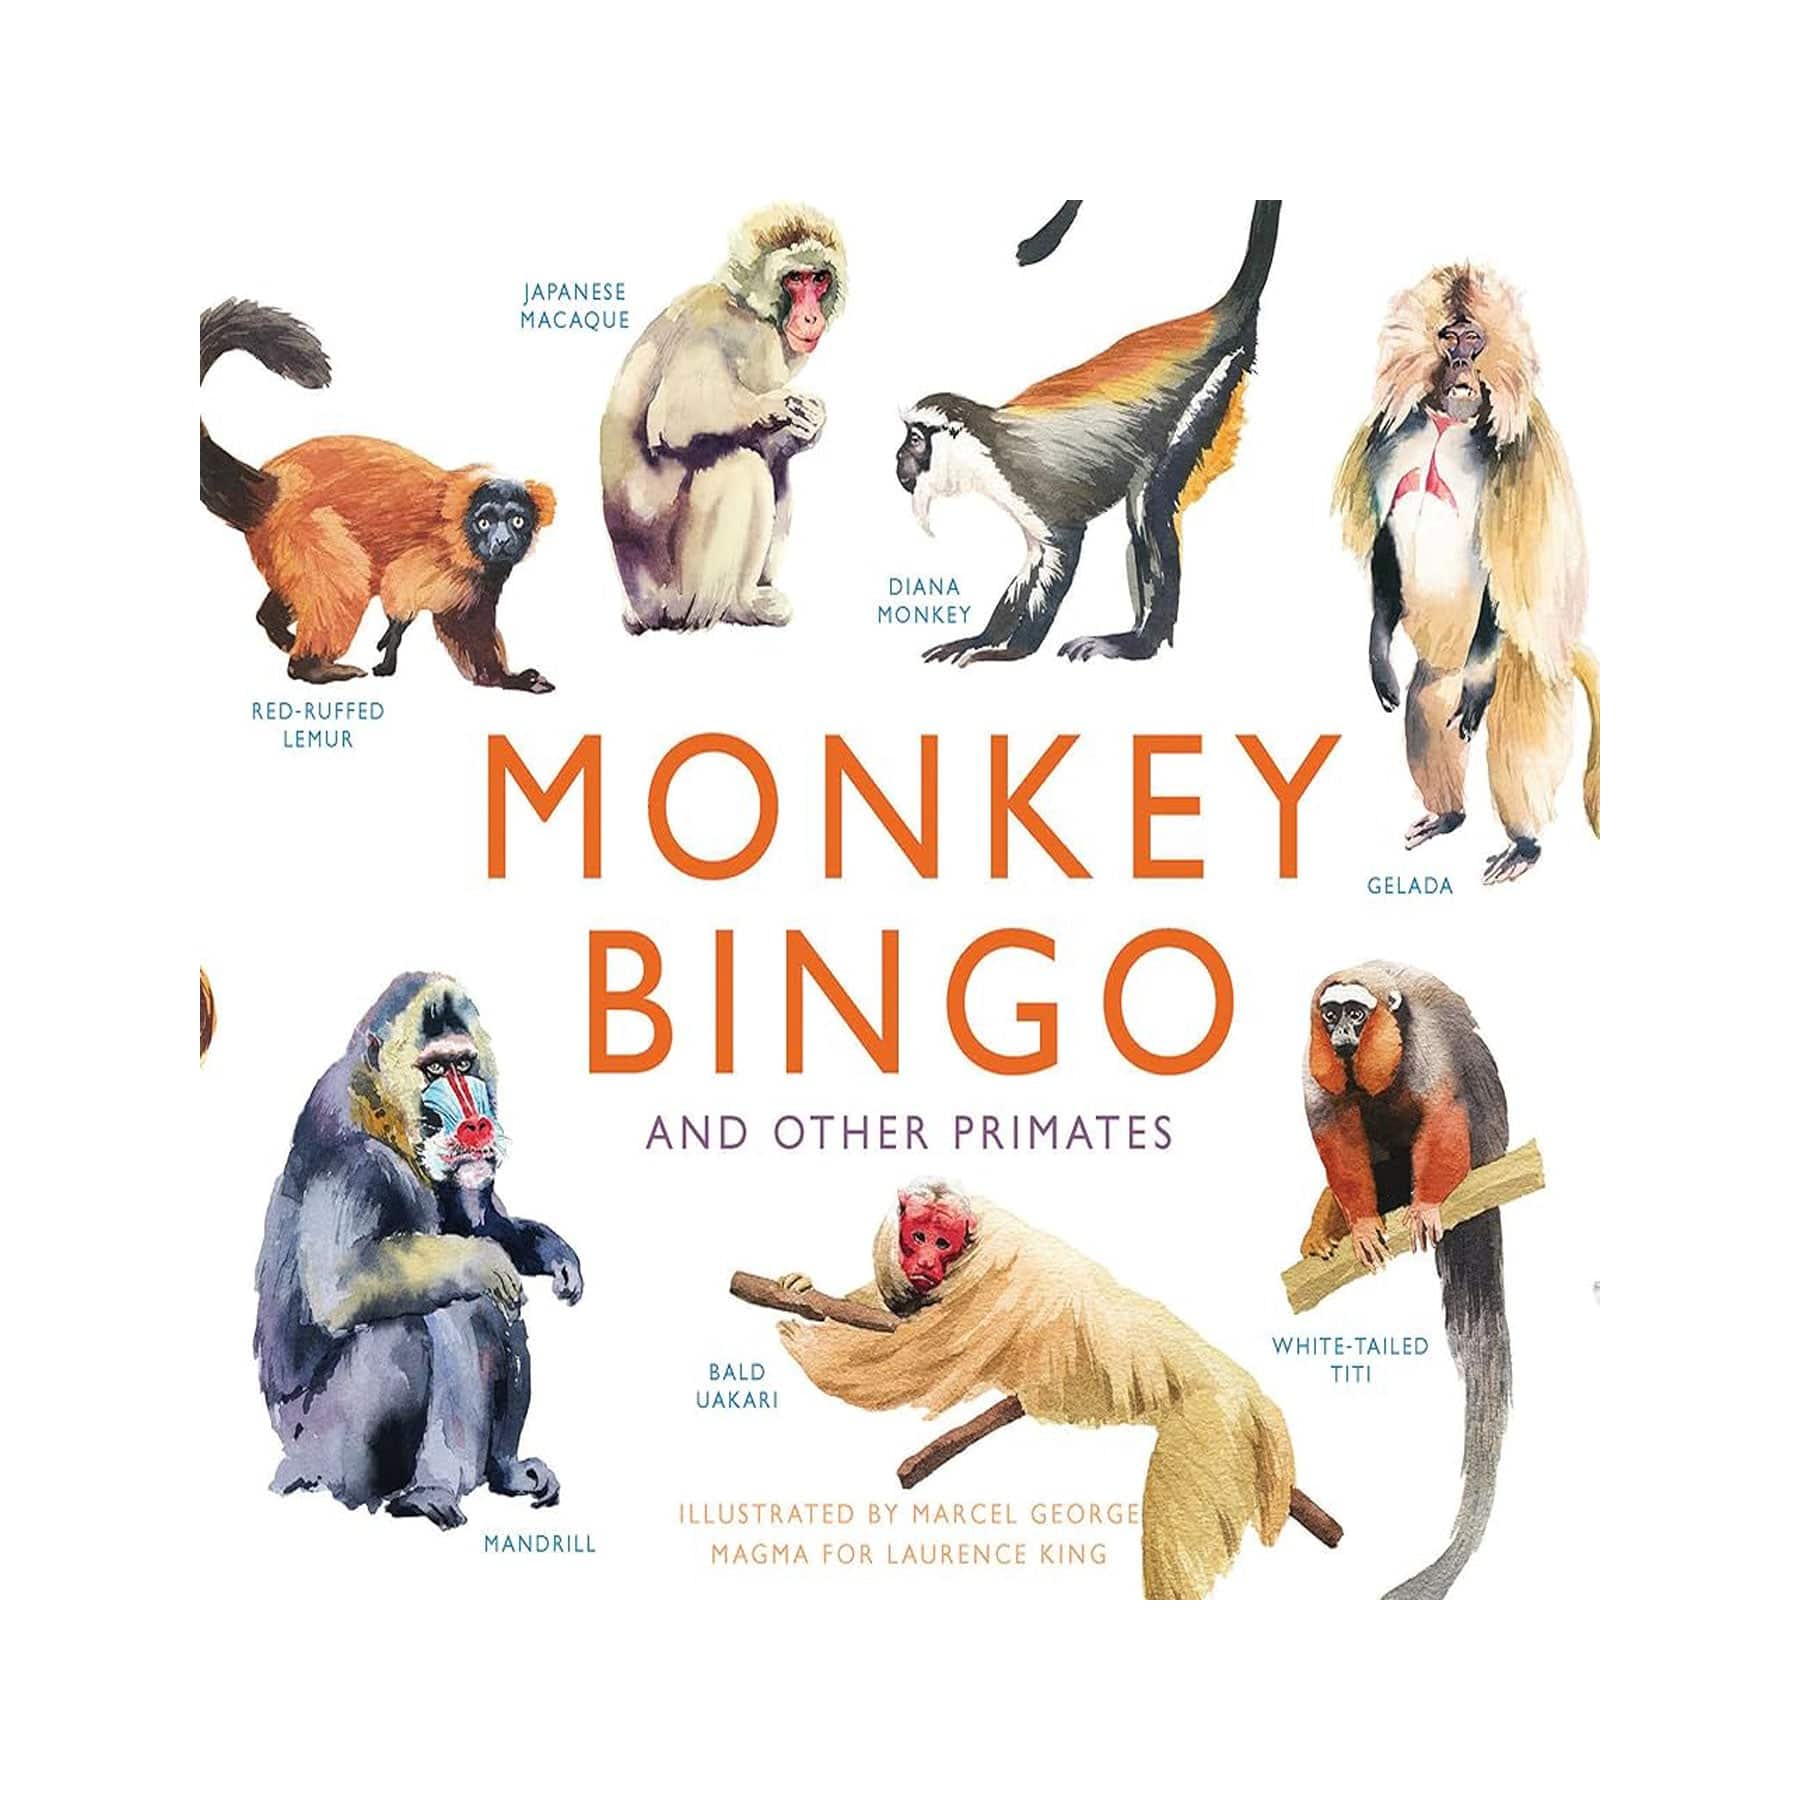 Monkey bingo